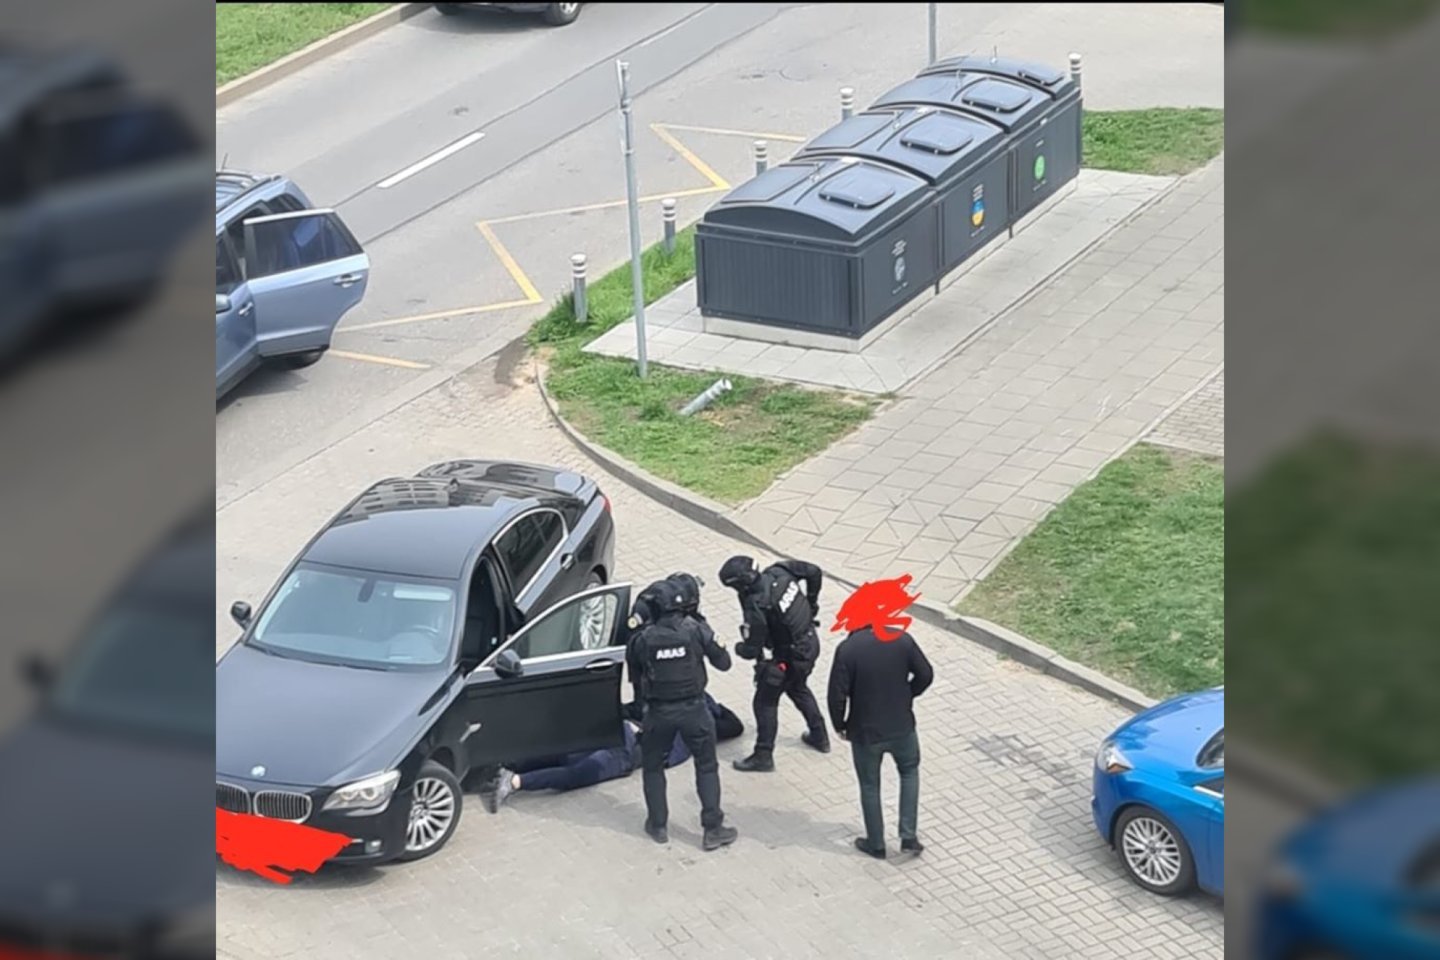  Kauno policija sučiupo mašinvagių gaujos atstovus, važiavusiius pagrobtu "Mercedes". <br> Policijos nuotr. 